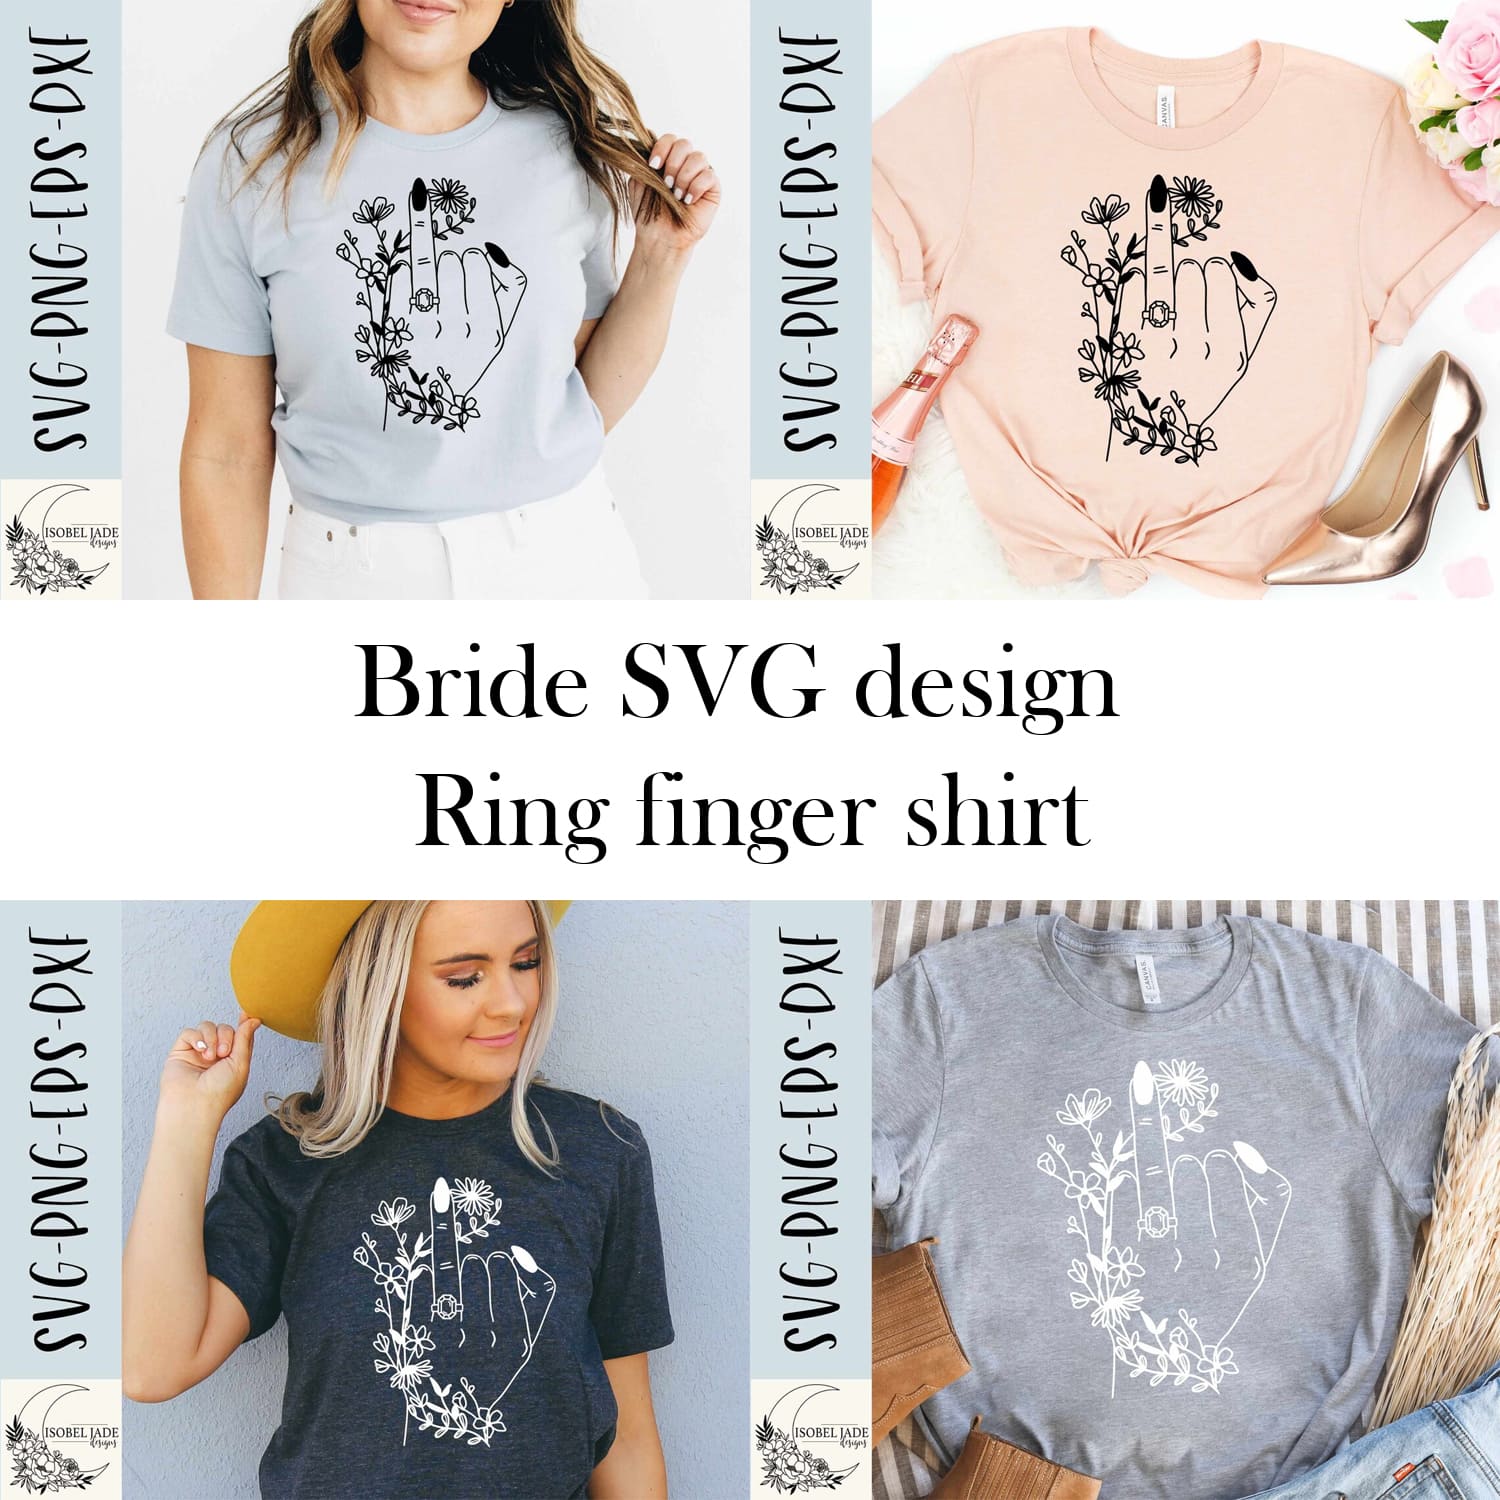 Bride SVG Design - Ring Finger Shirt cover image.